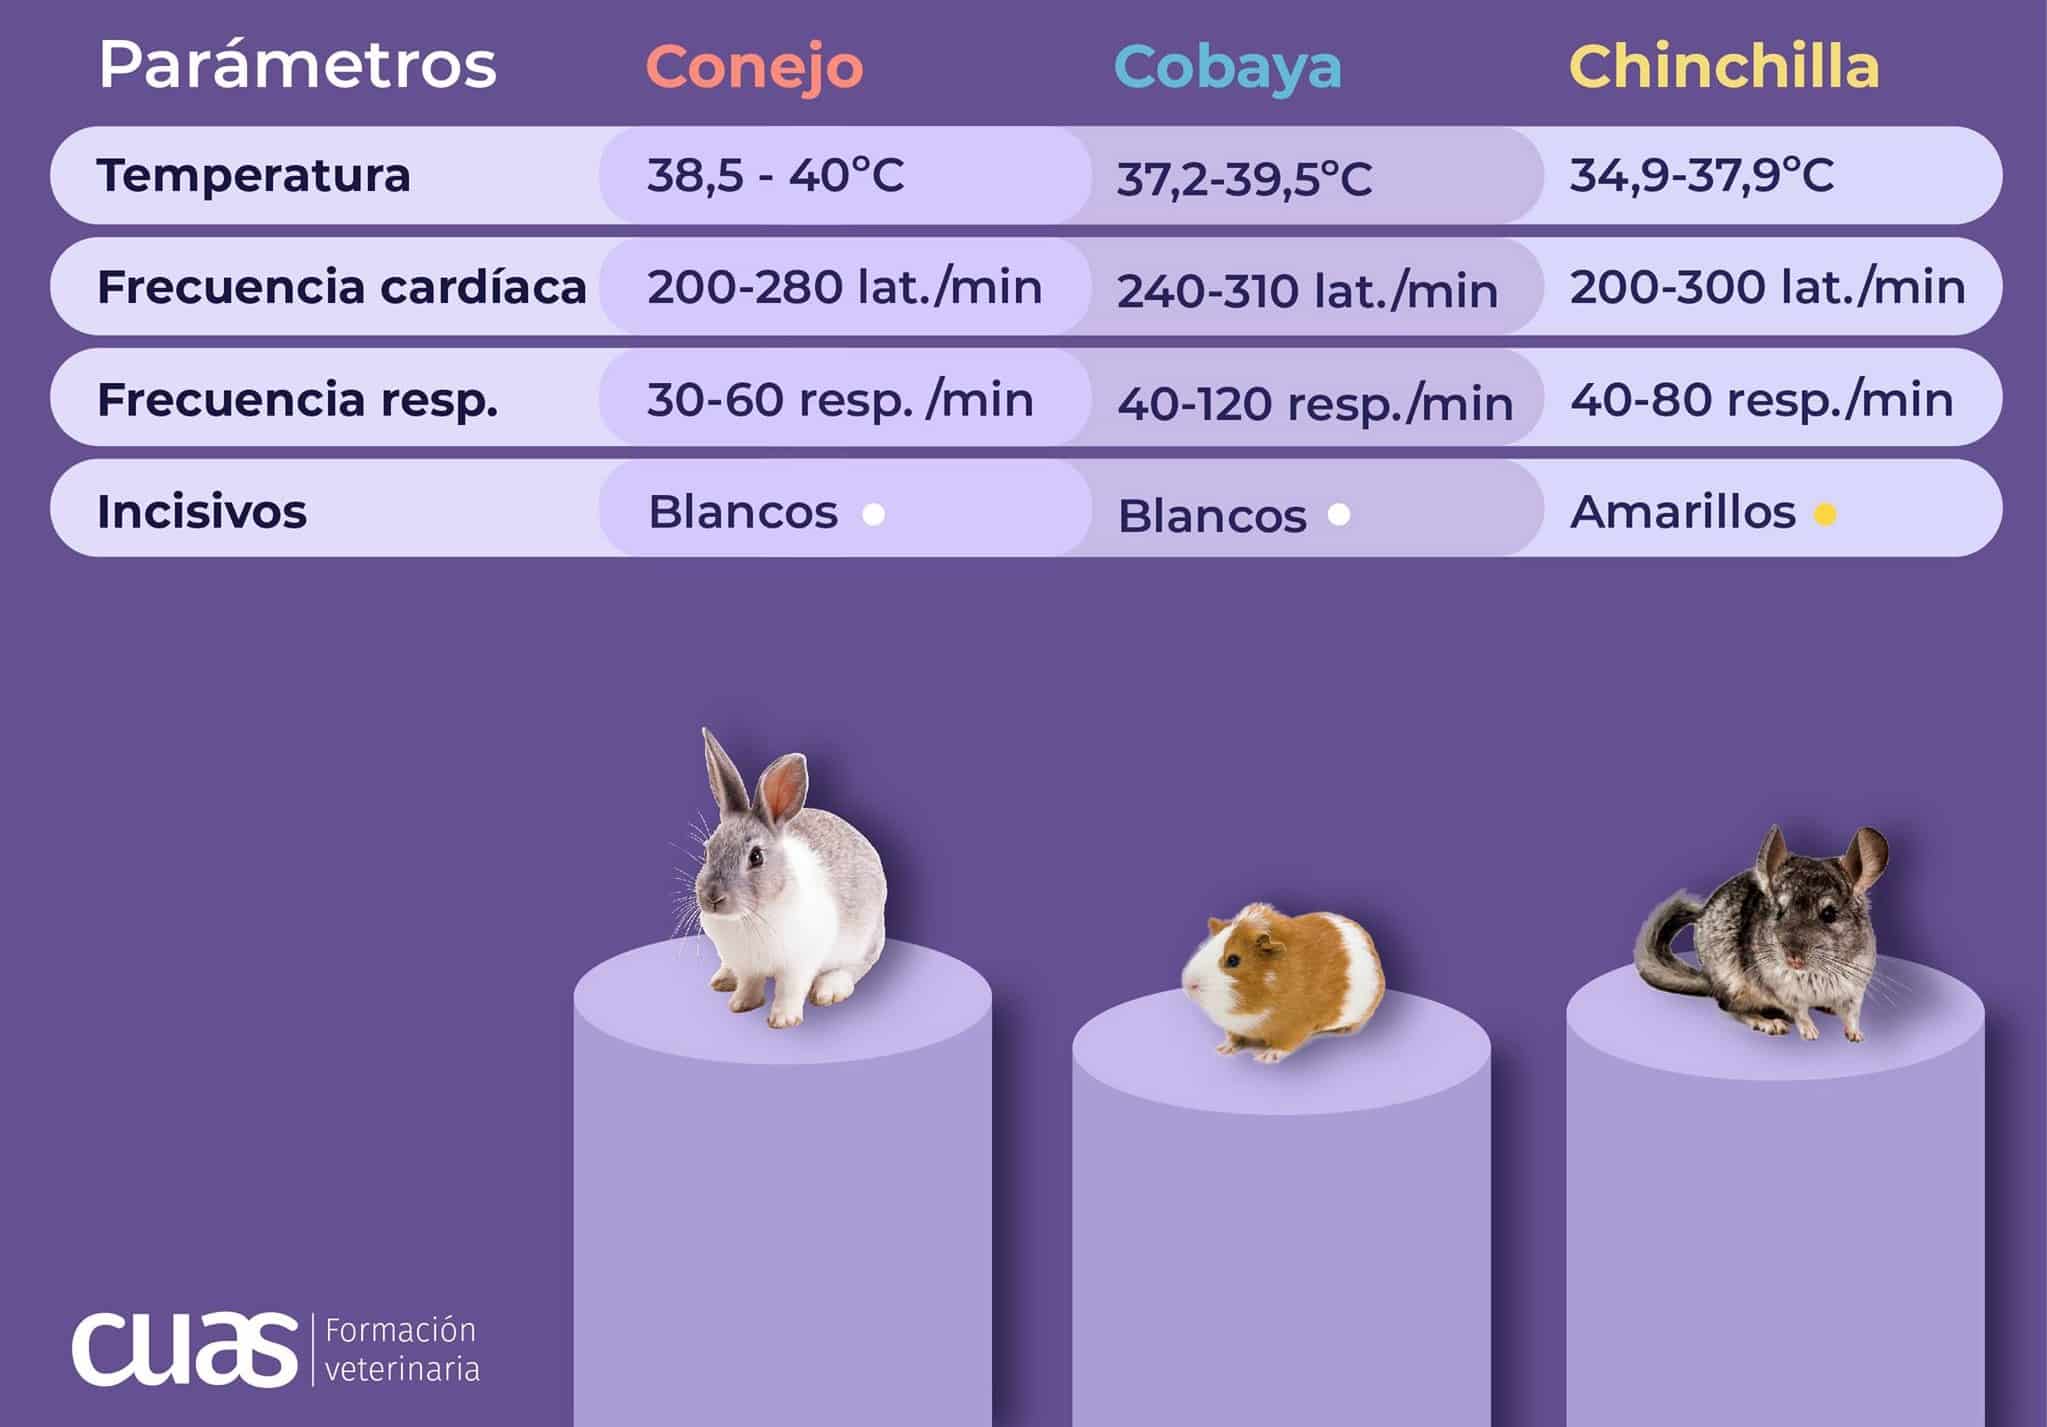 Parámetros conejo, cobaya y chionchilla